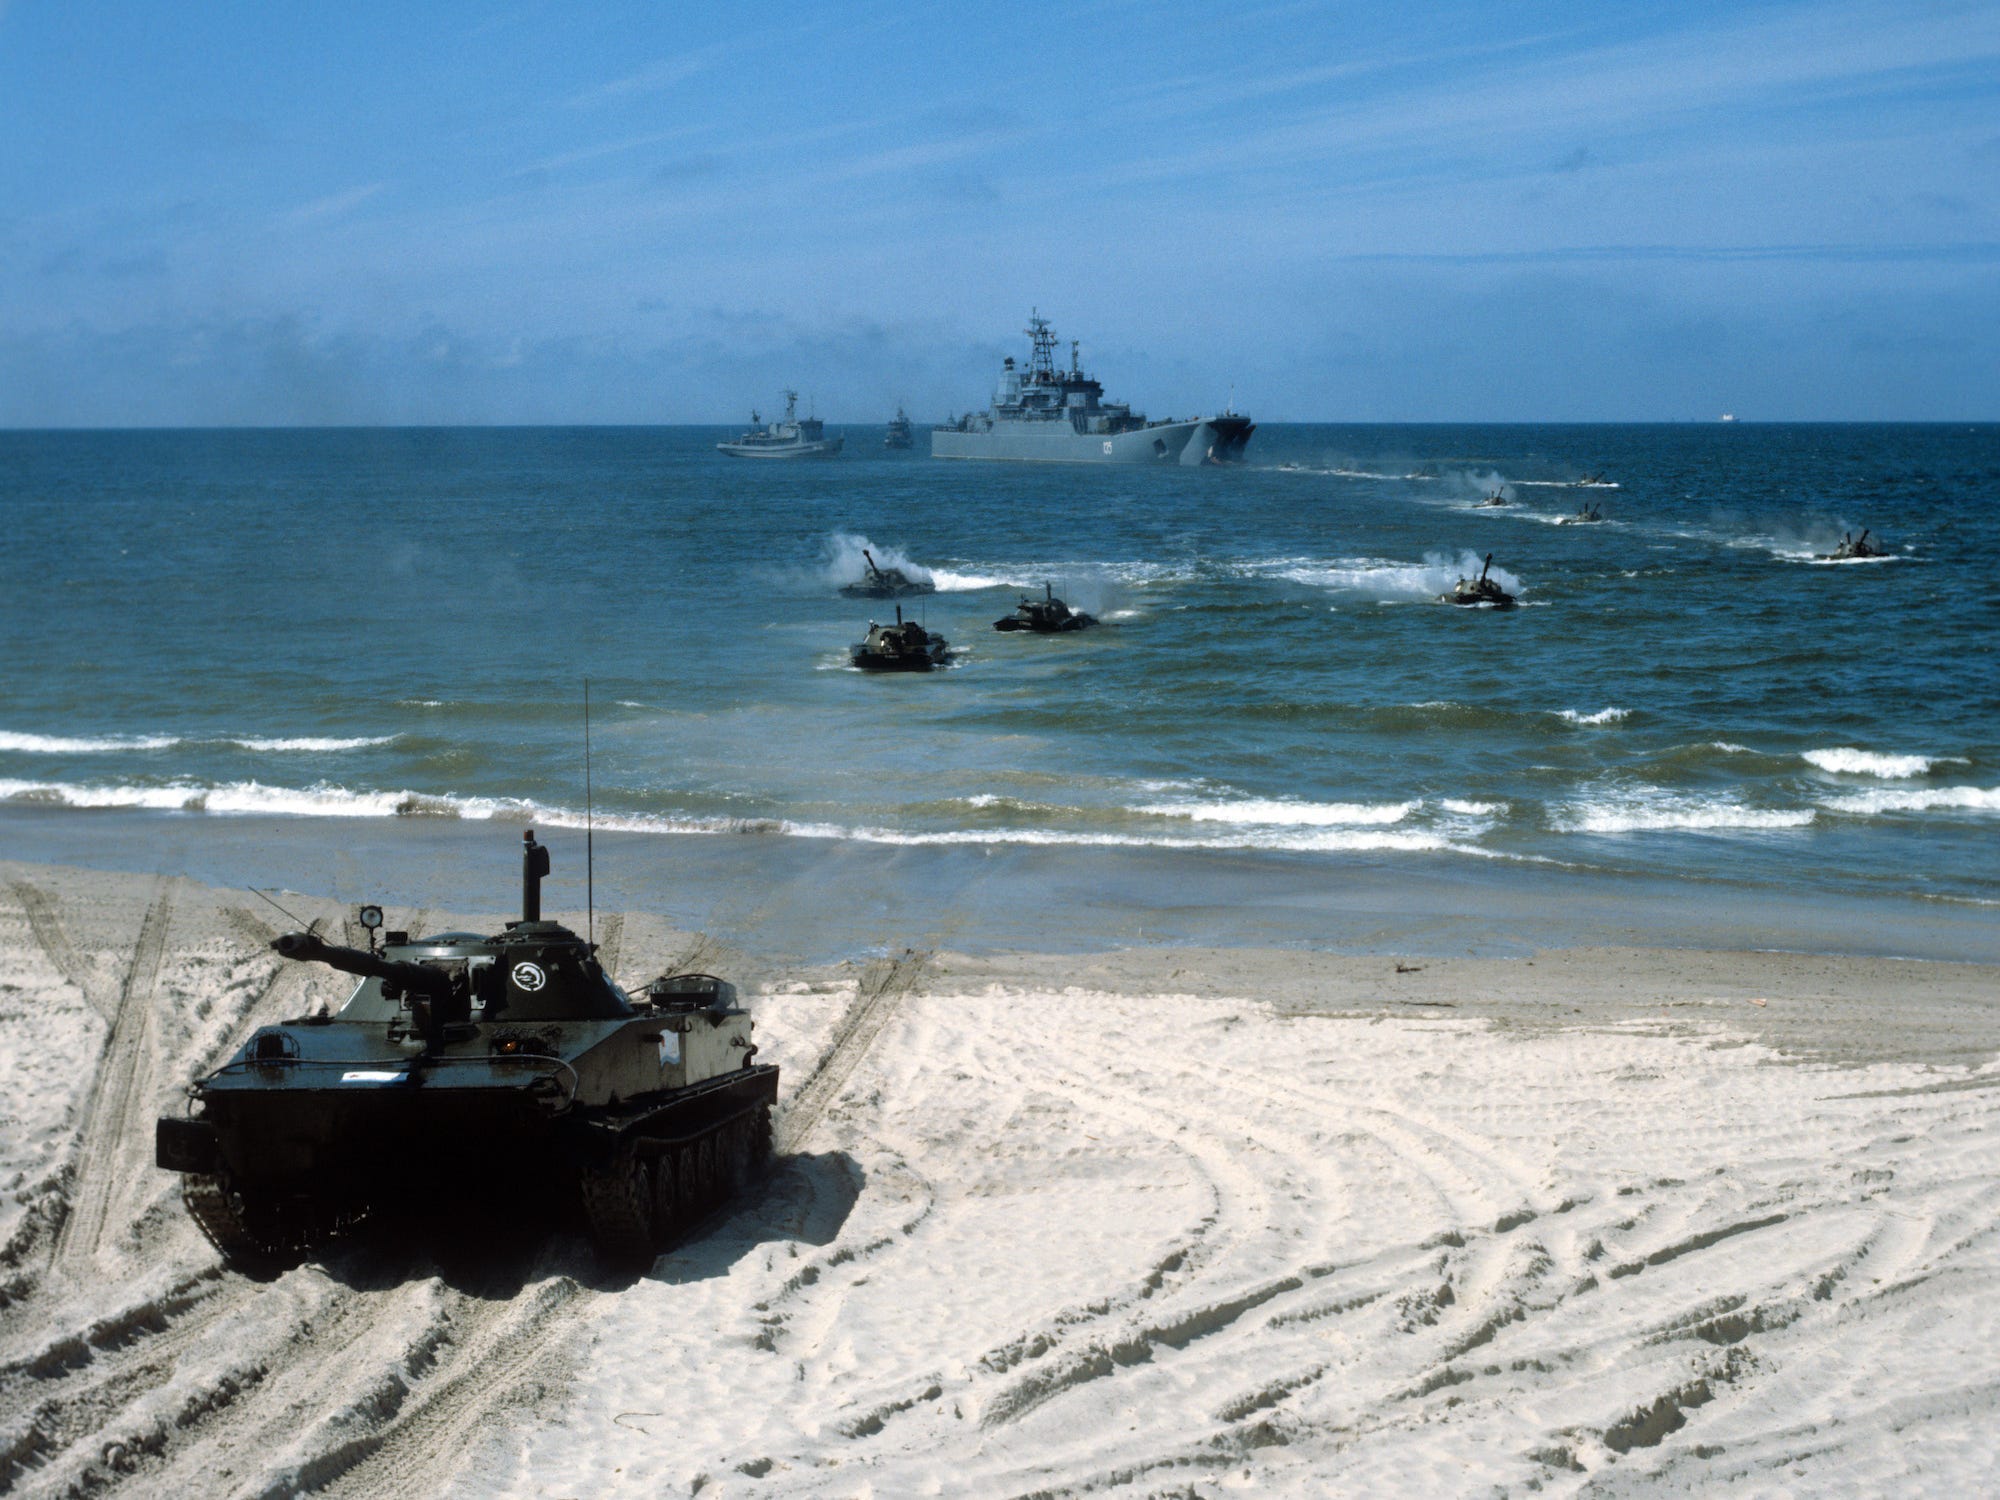 Soviet armored vehicles ashore in Kaliningrad